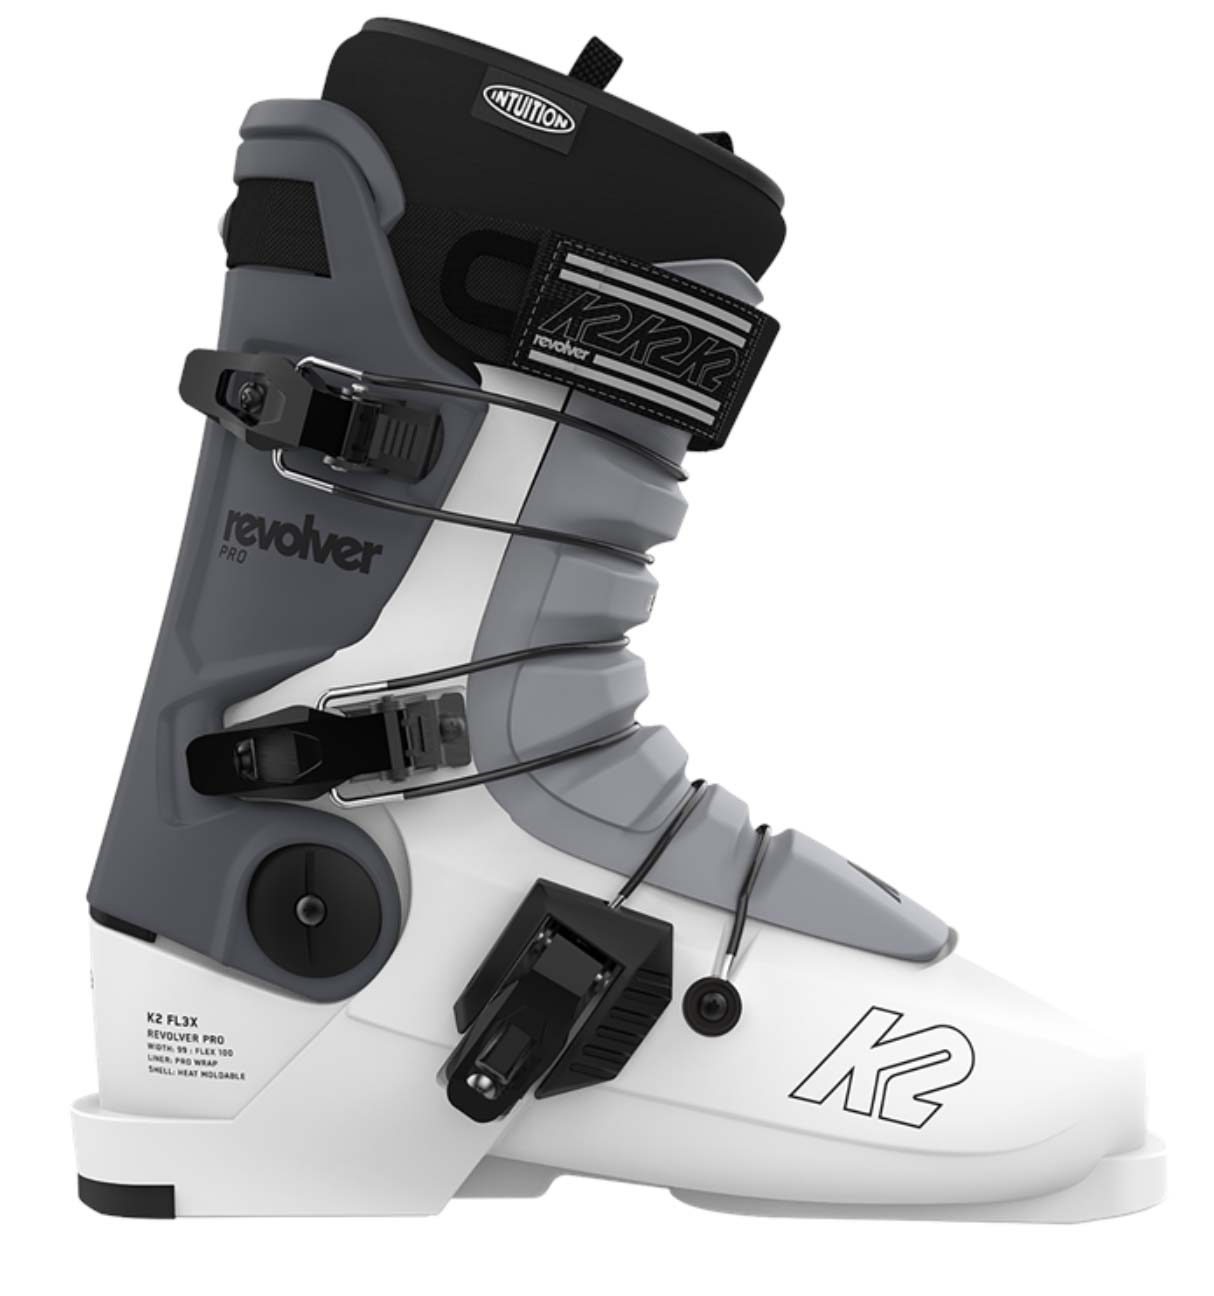 K2 FL3X Revolver Pro ski boots